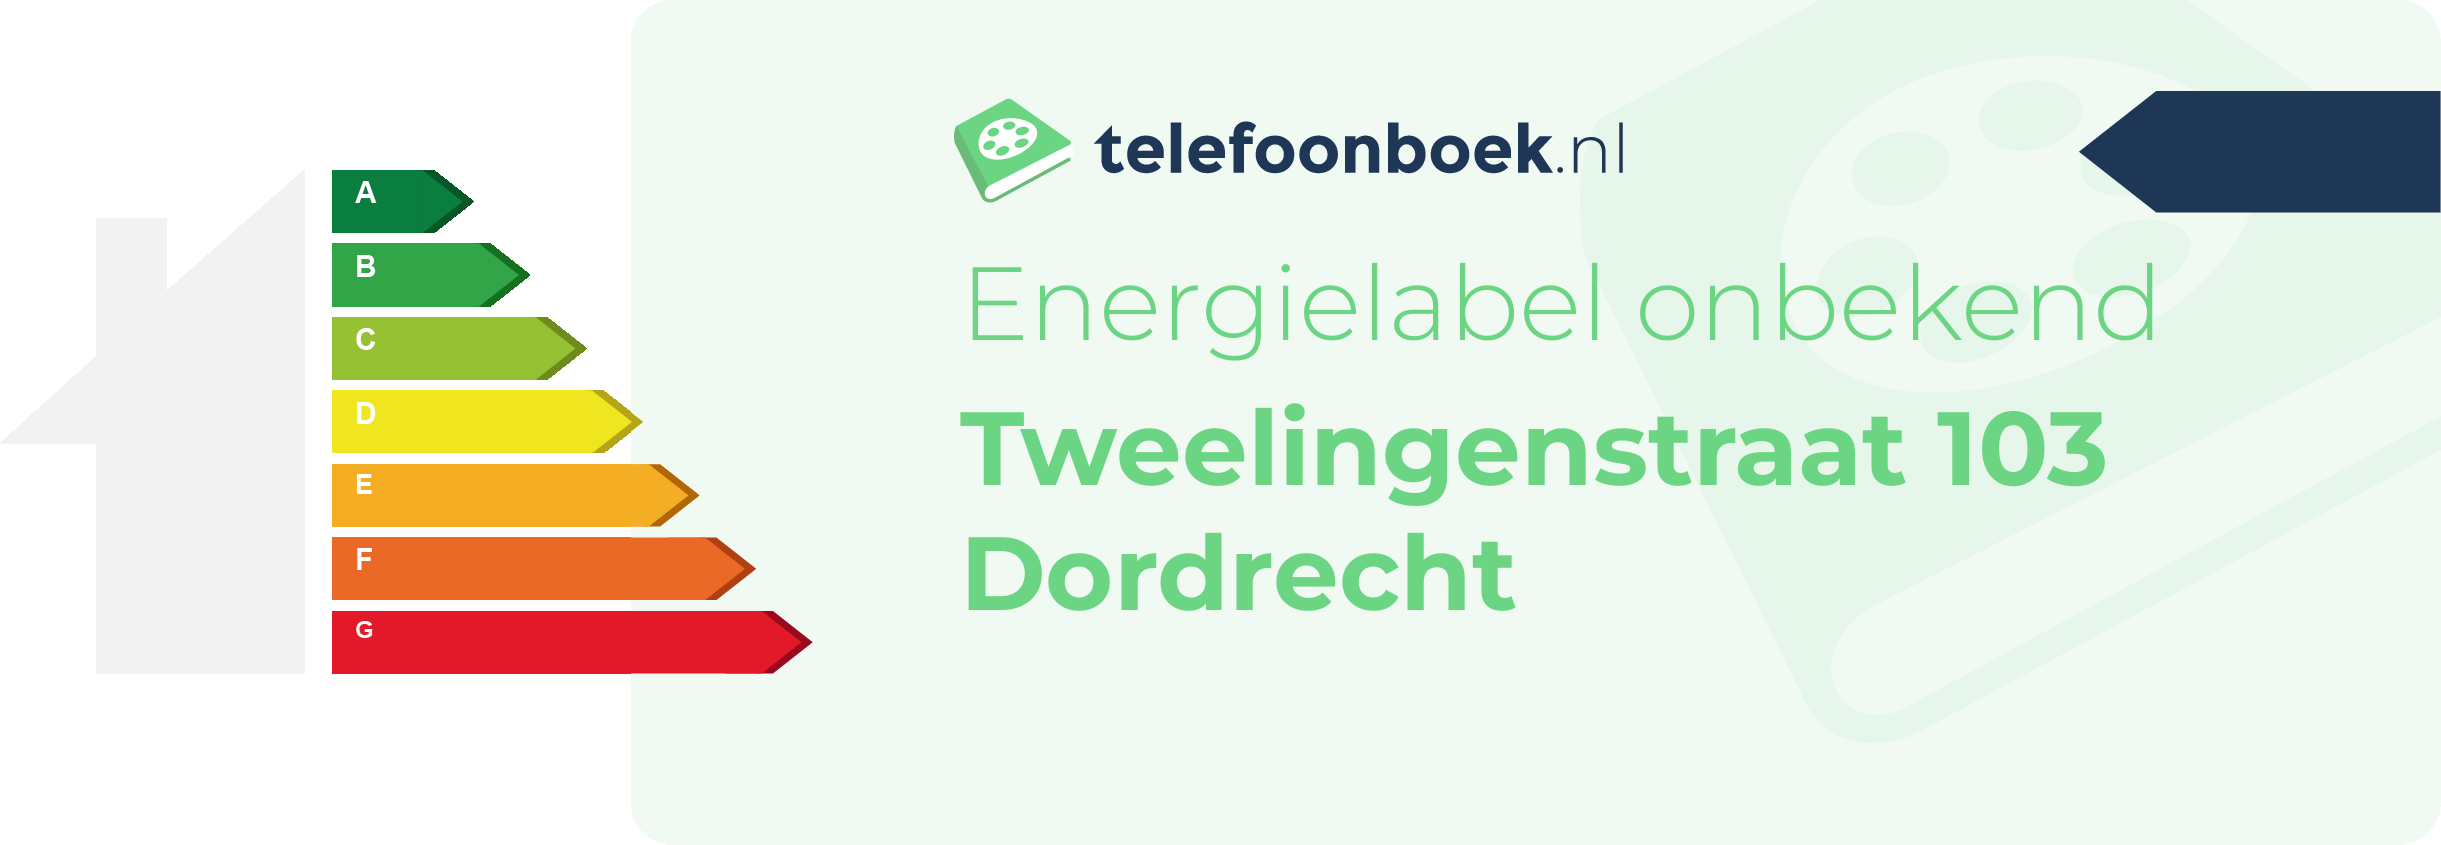 Energielabel Tweelingenstraat 103 Dordrecht